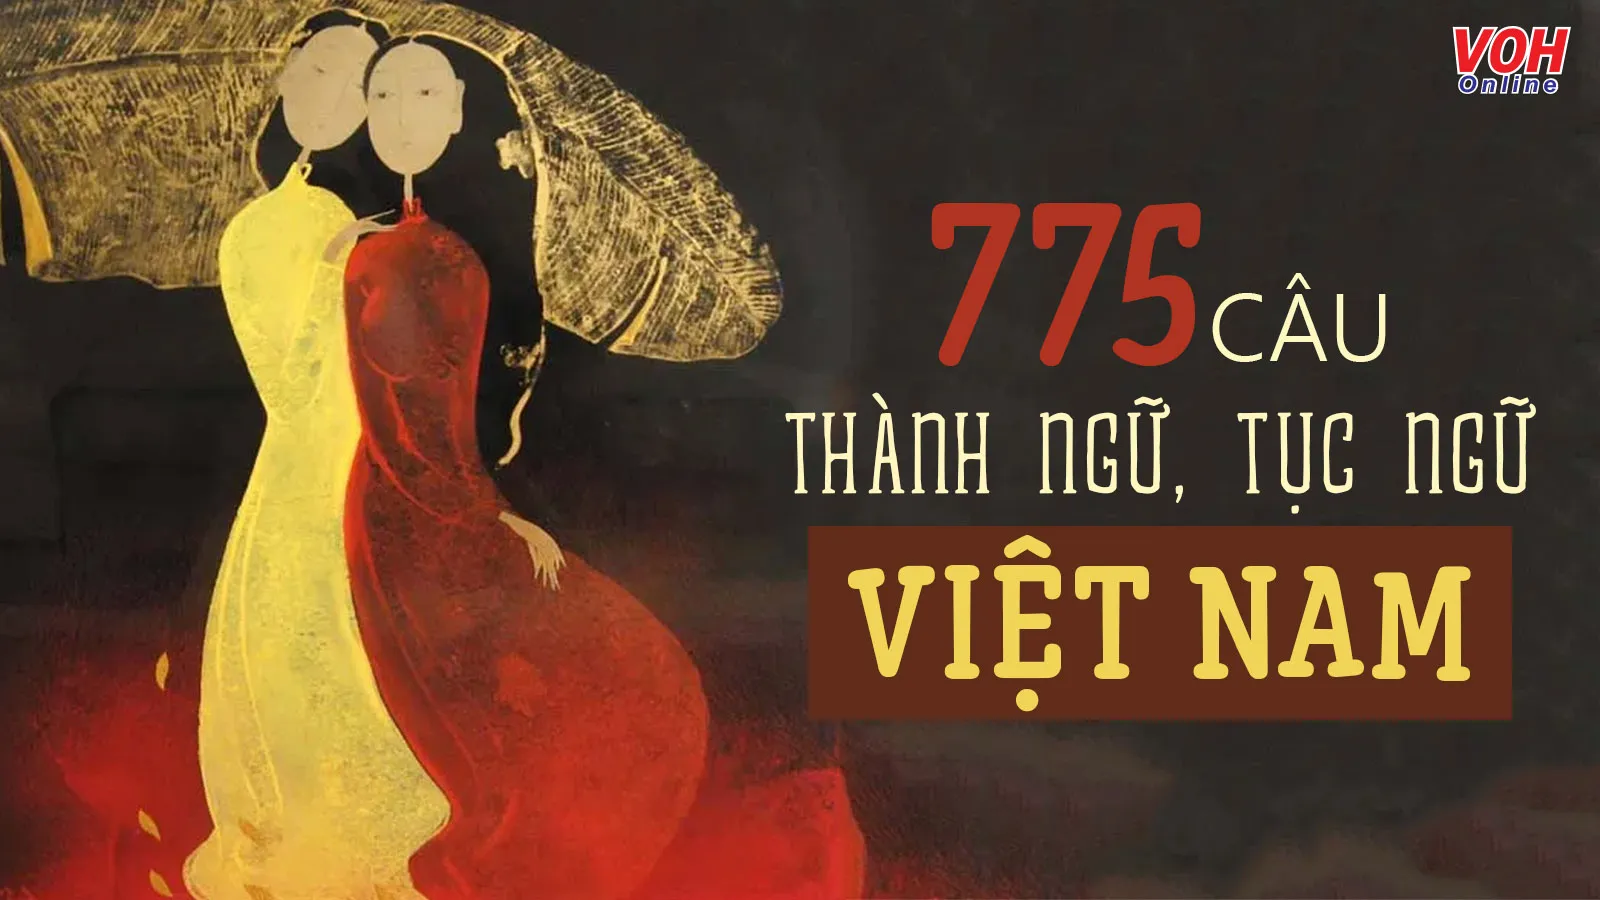 775 câu thành ngữ, tục ngữ Việt Nam dạy bạn những bài học đắt giá trong cuộc sống